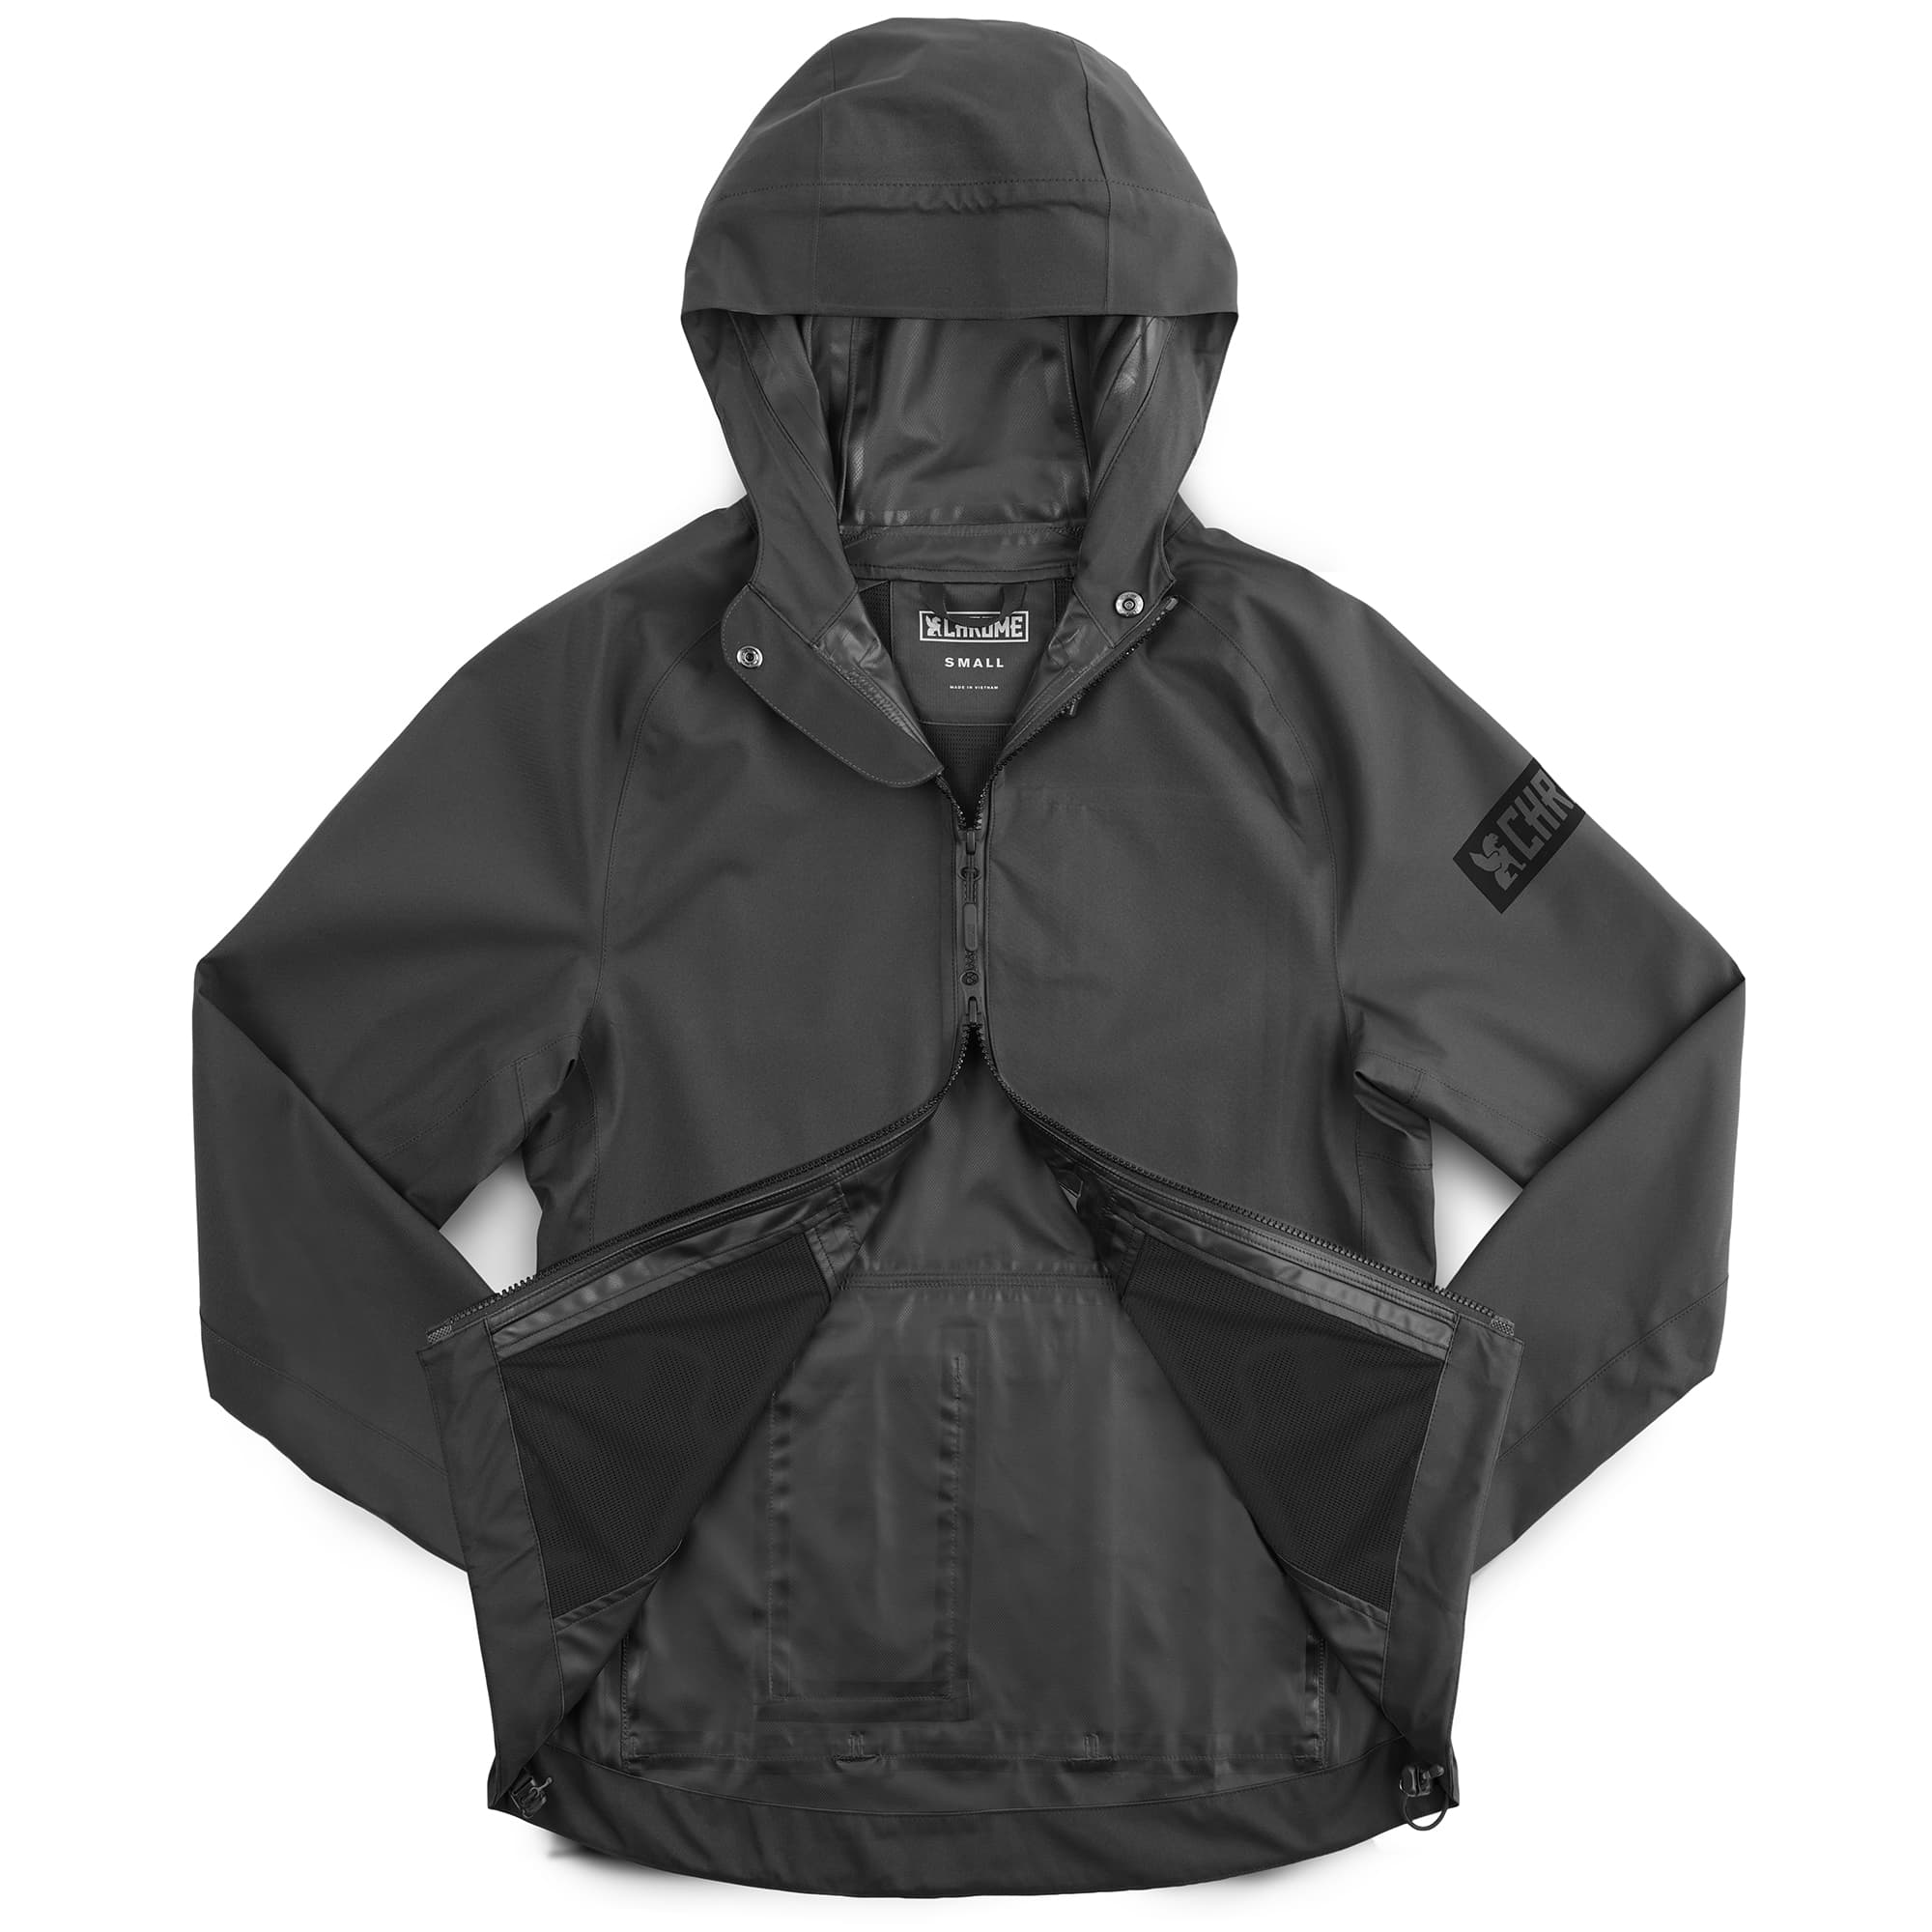 Women's waterproof jacket in black showing 2-way zipper